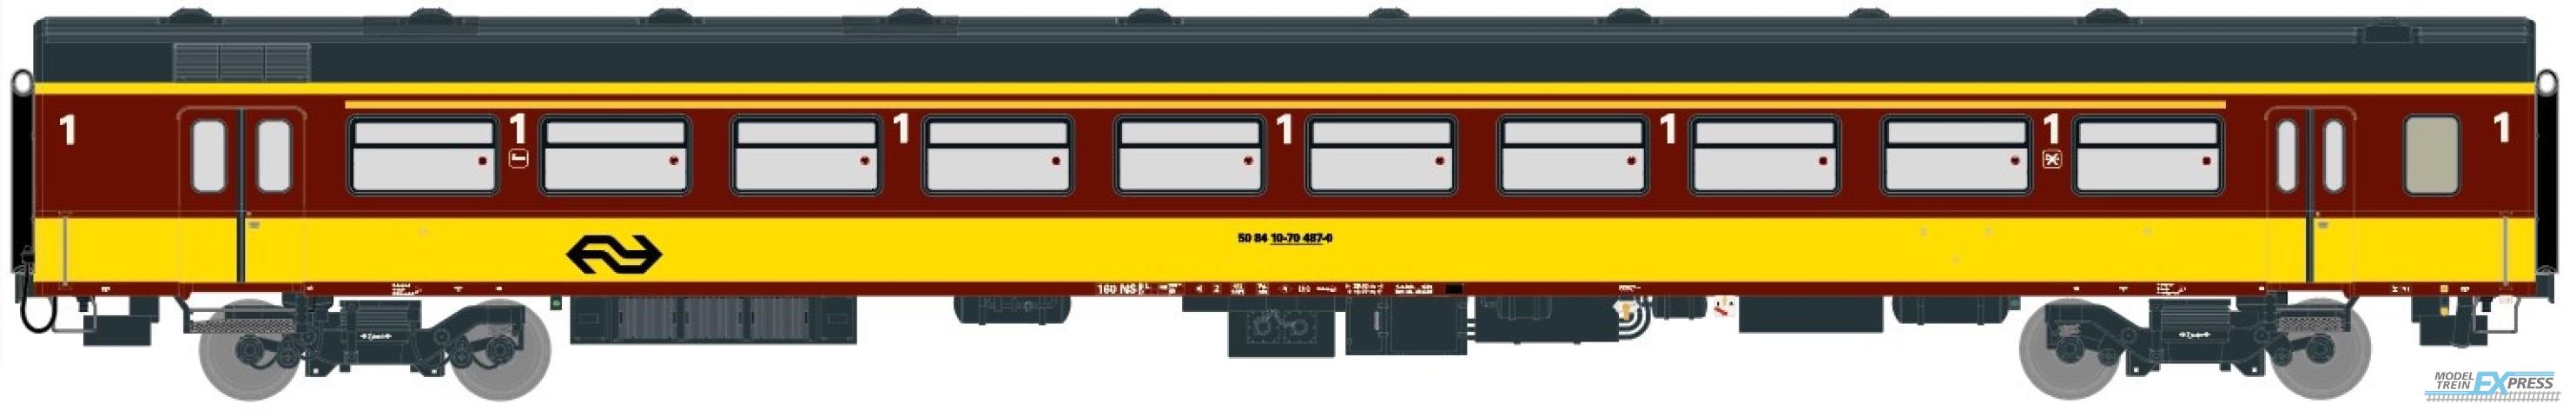 Exact-train 11080 NS ICR (Originalversion) für den Beneluxzug nach Belgien Reisezugwagen A ( Farbe Gelb / Rot), Ep. IV